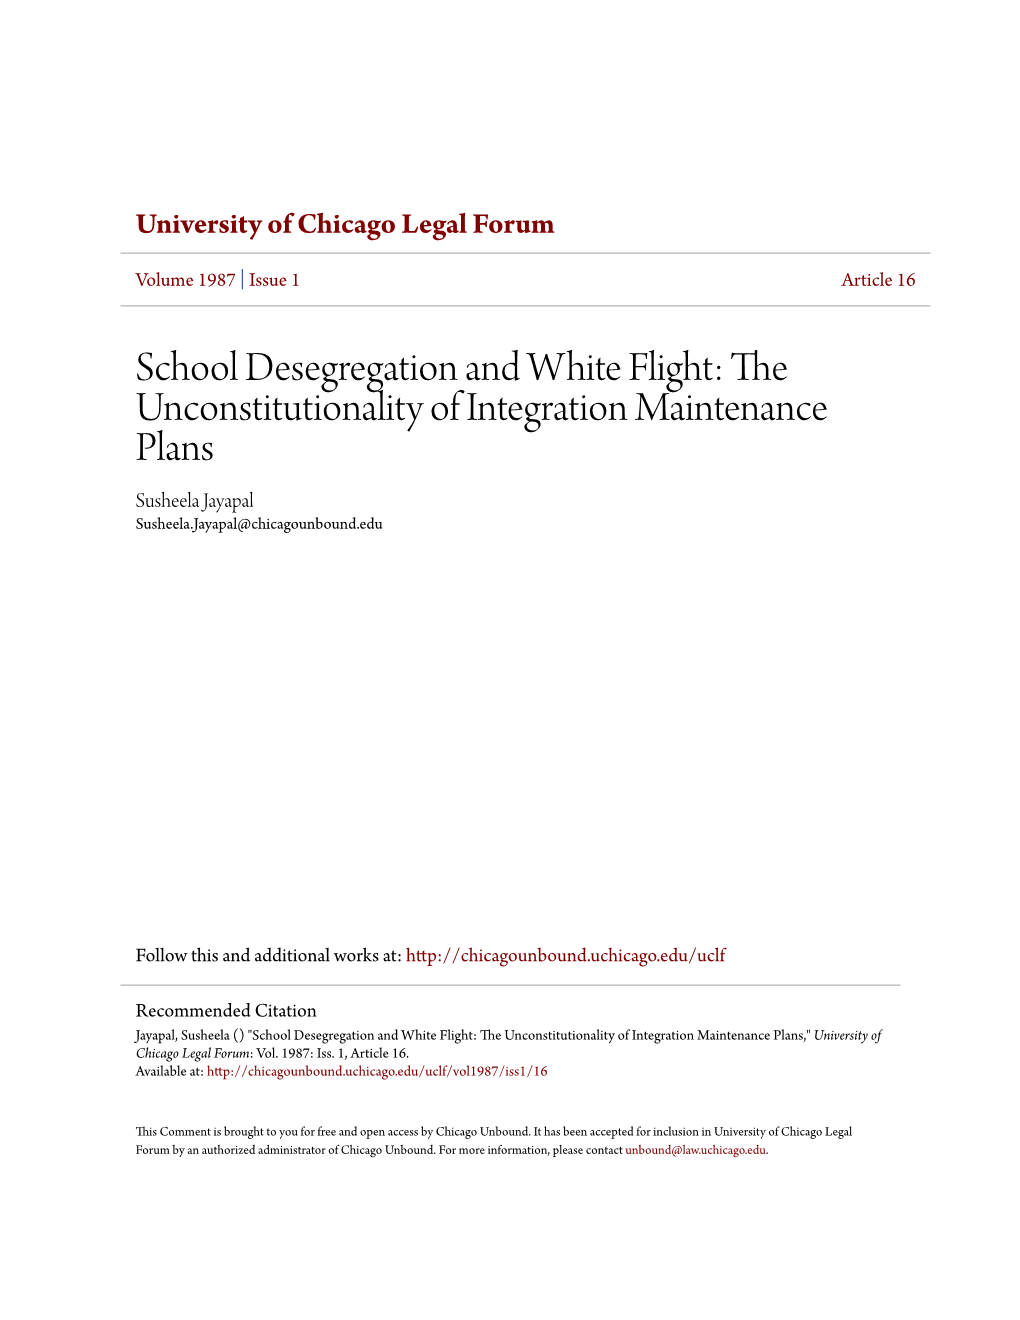 School Desegregation and White Flight: the Unconstitutionality of Integration Maintenance Plans Susheela Jayapal Susheela.Jayapal@Chicagounbound.Edu